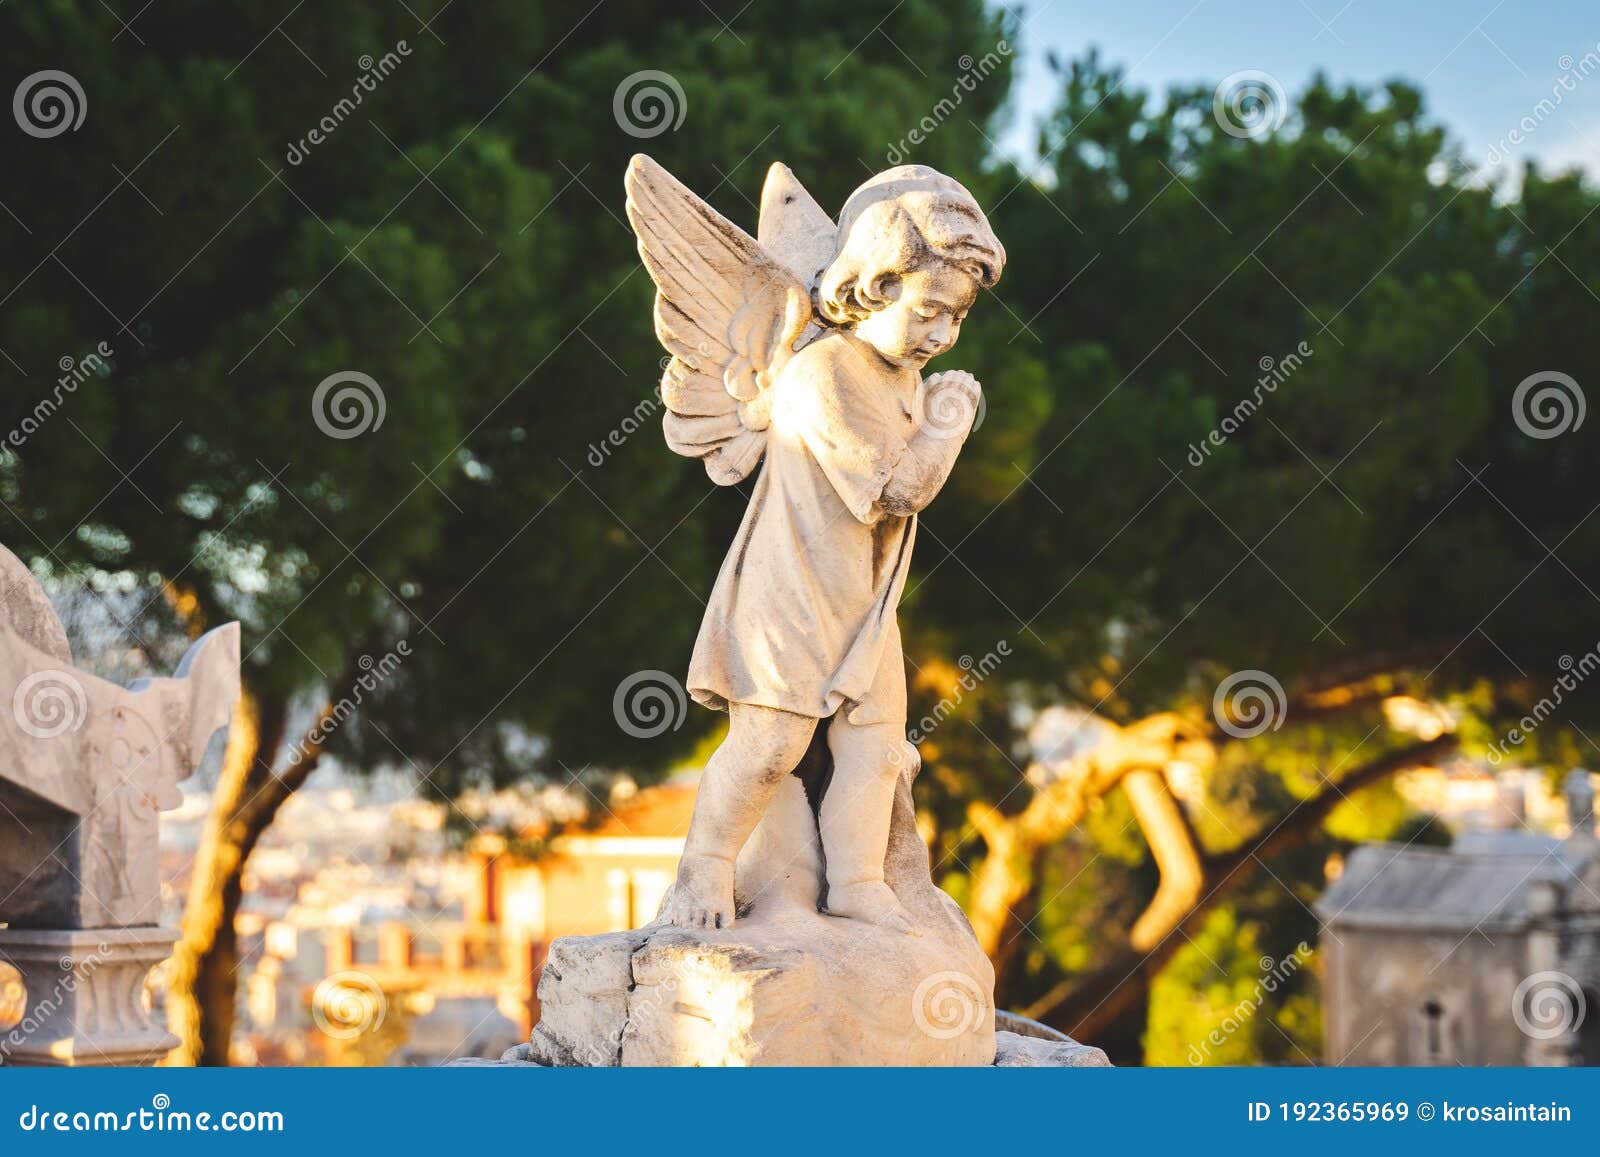 天使雕塑 墓地雕塑模型-神话雕塑模型库-glTF(.gltf/.glb)模型下载-cg模型网